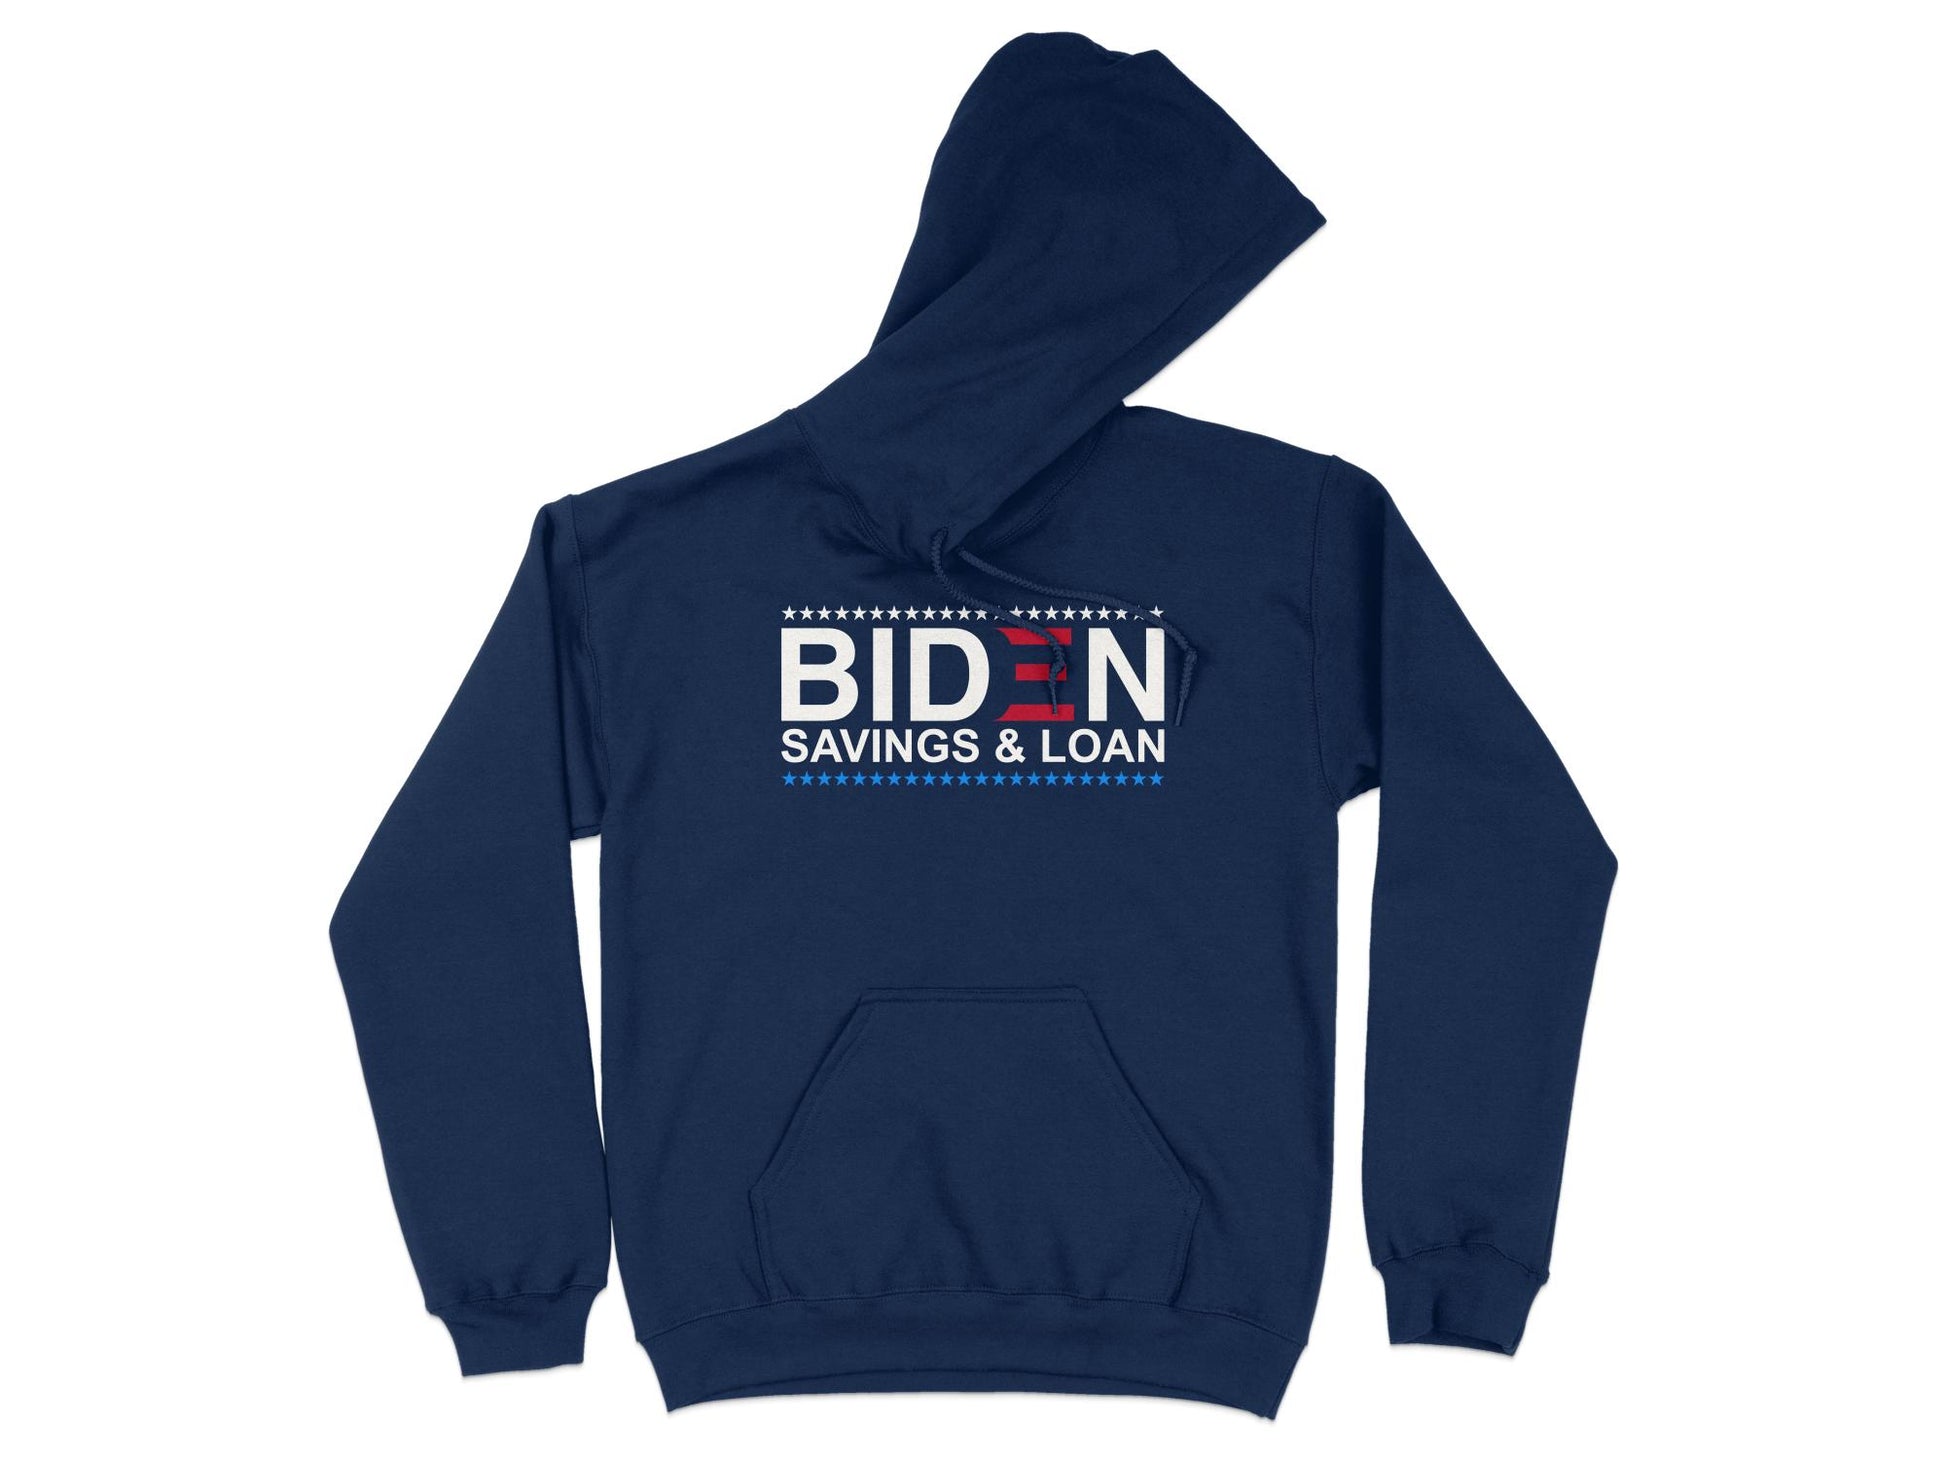 Joe Biden Hoodie - Savings and Loan, navy blue